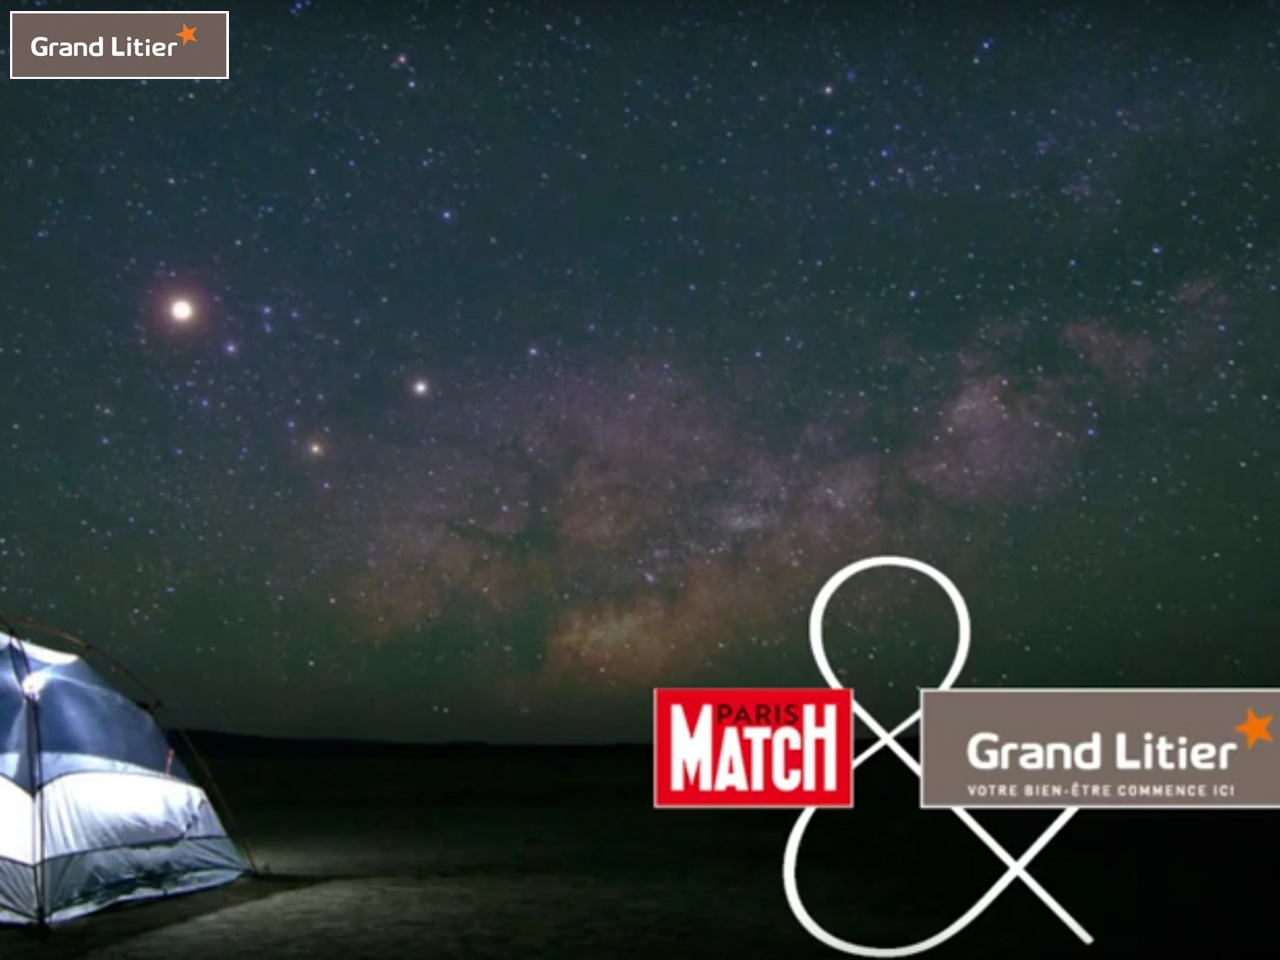 Grand Litier lance « vos plus belles nuits », son premier concours photo